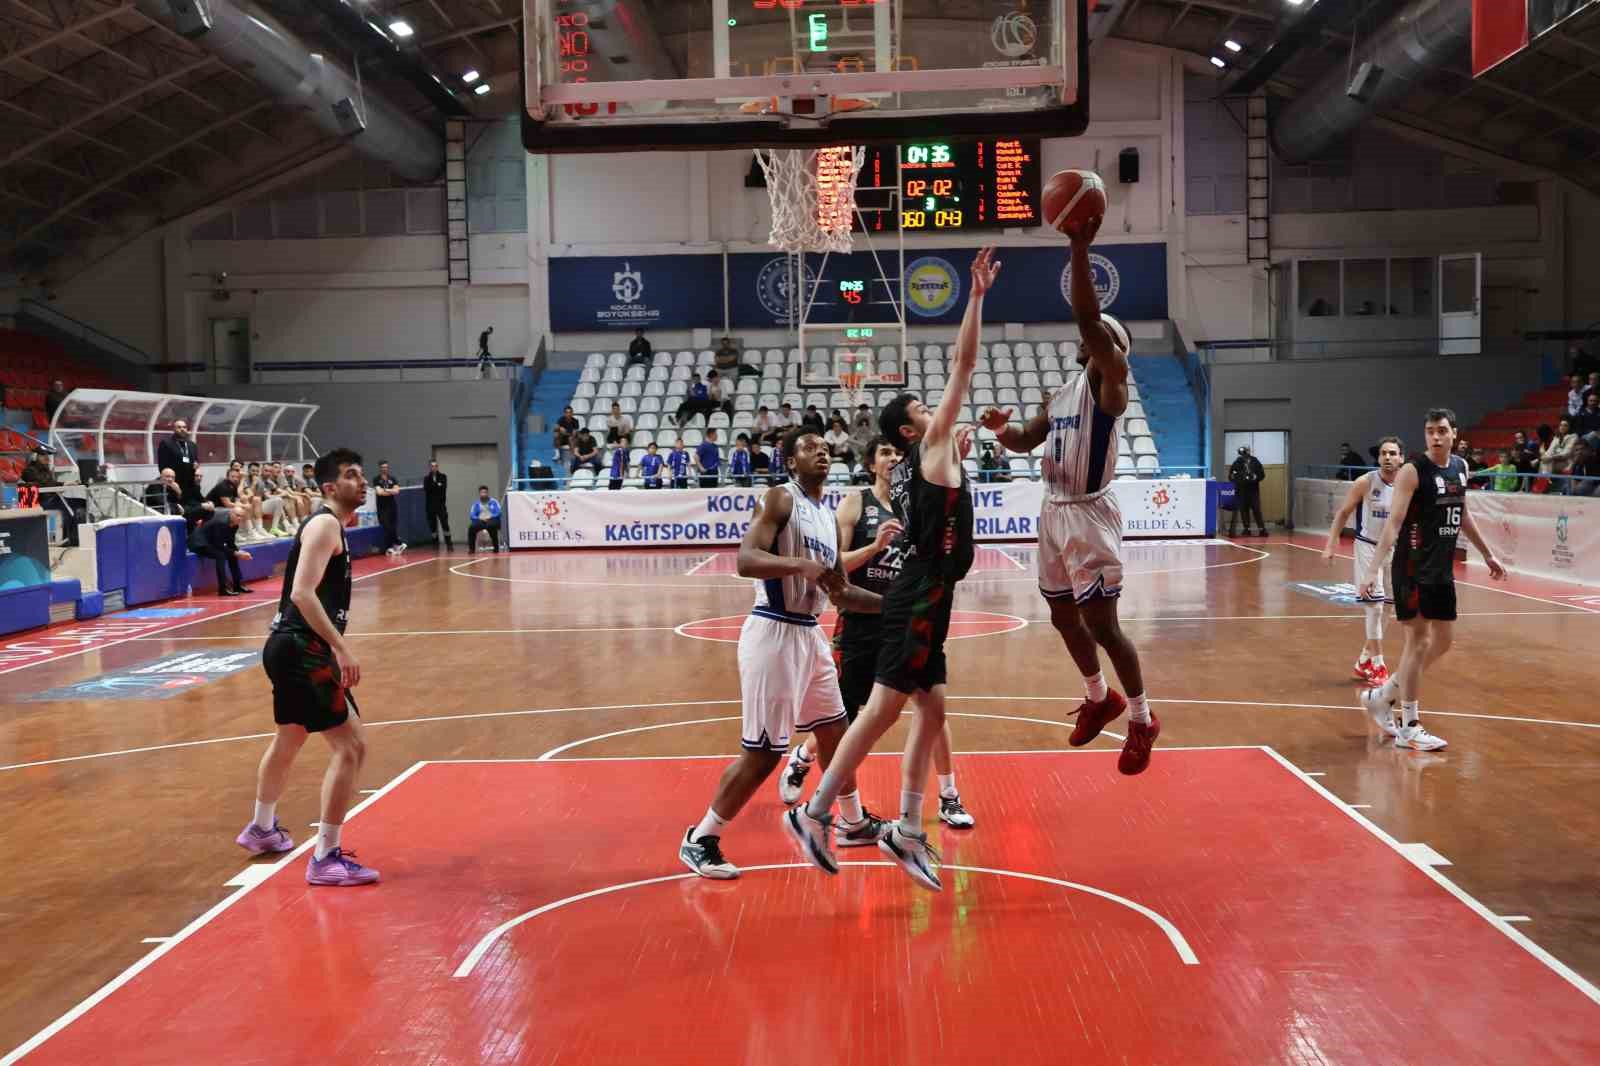 turkiye basketbol ligi kocaeli bsb kagitspor 98 bornova belediyesi karsiyaka 72 11 g5dzgCnd